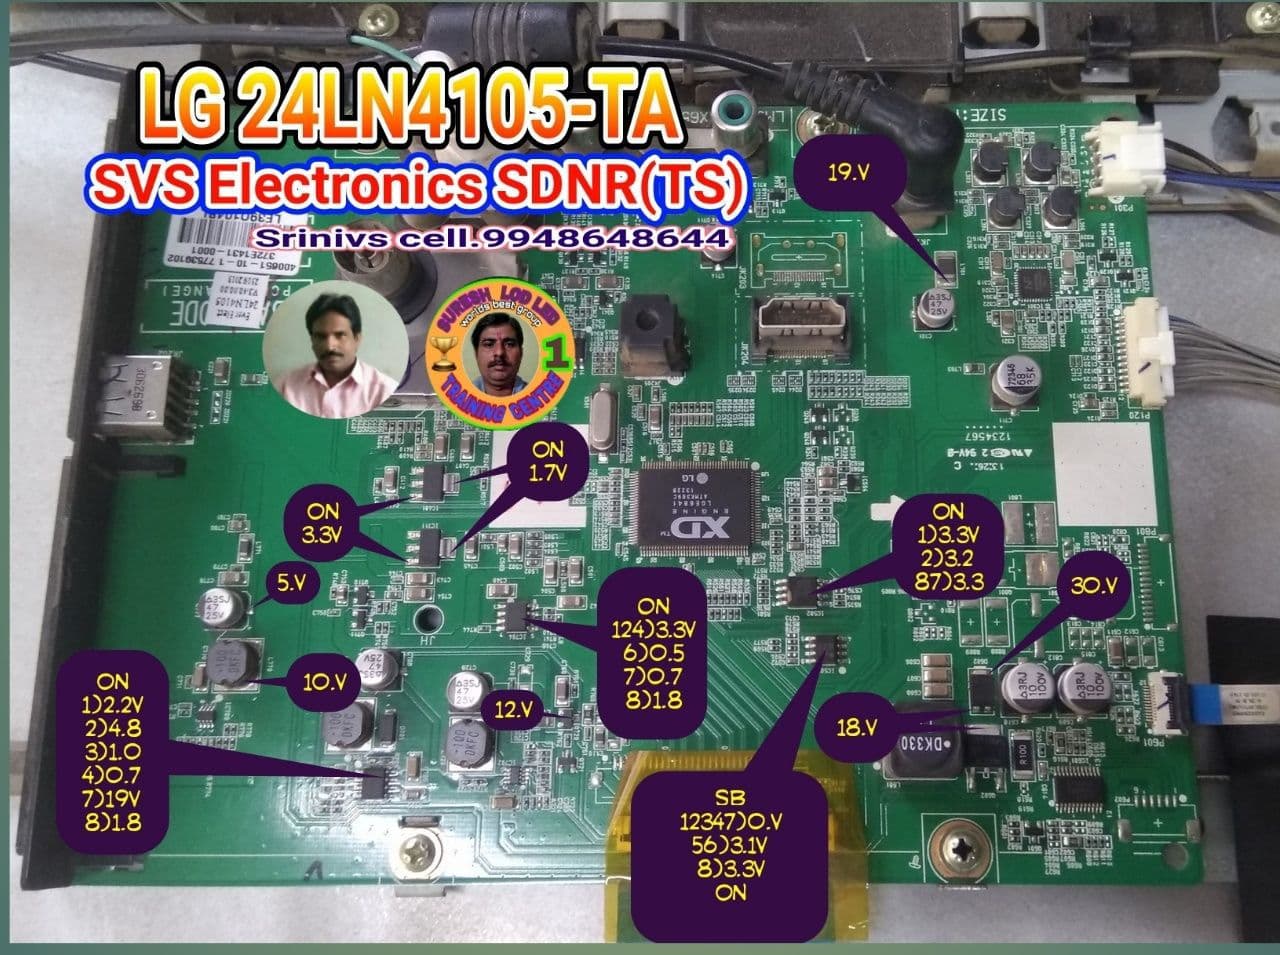 LG  24LN4105-TA BOARD DETAIL.jpg